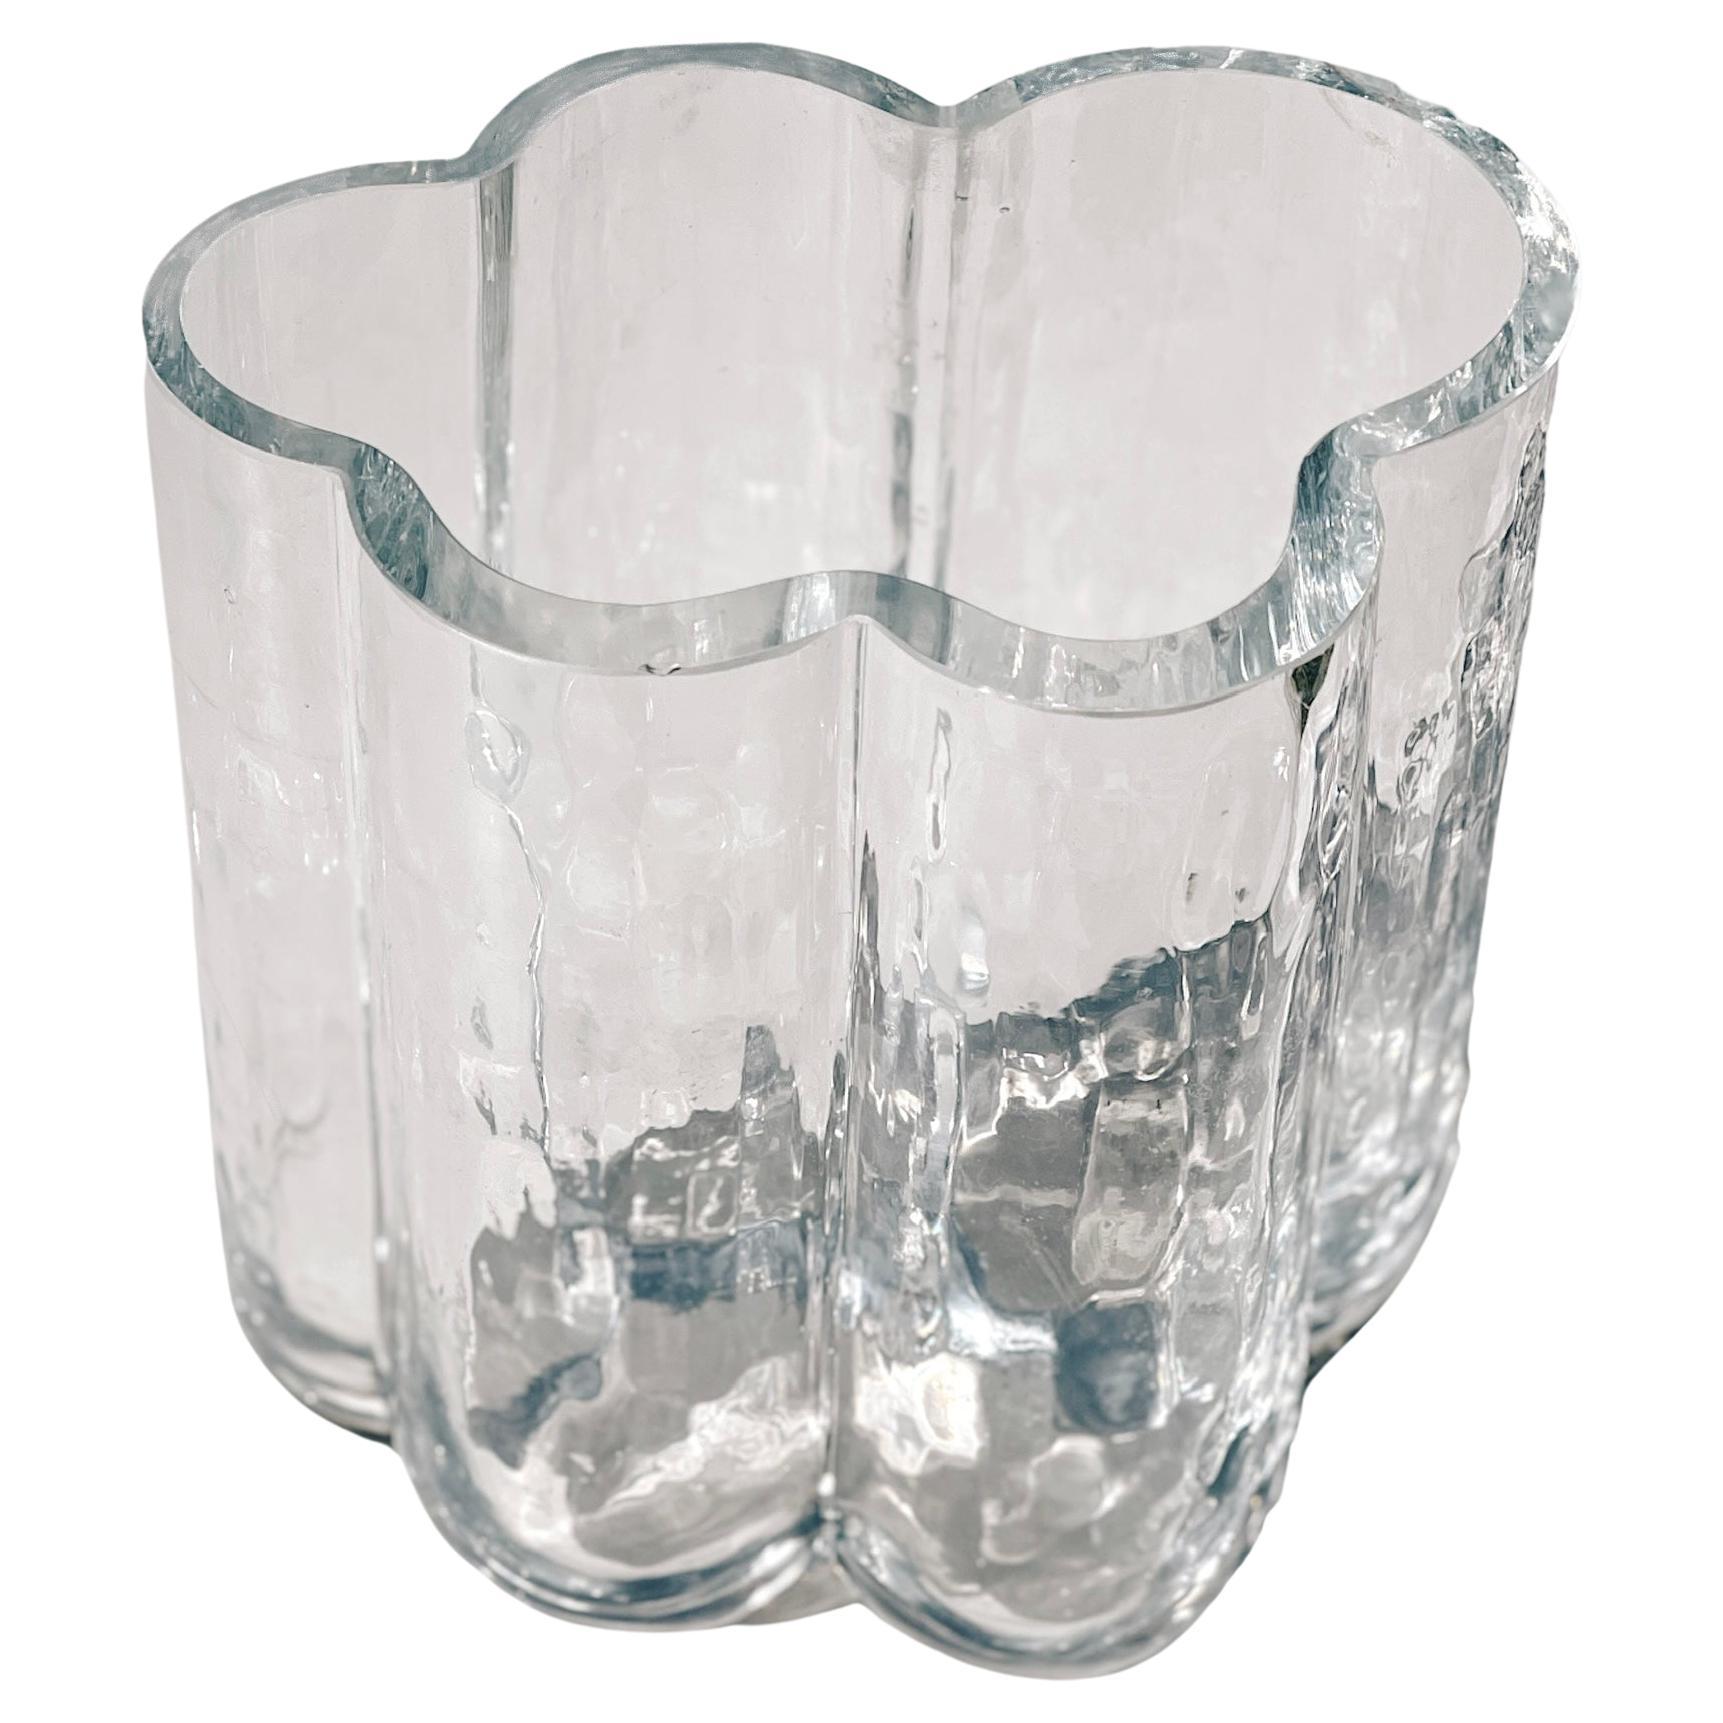 Vase nuage en cristal moderne scandinave, c. 1970, Studio Glass